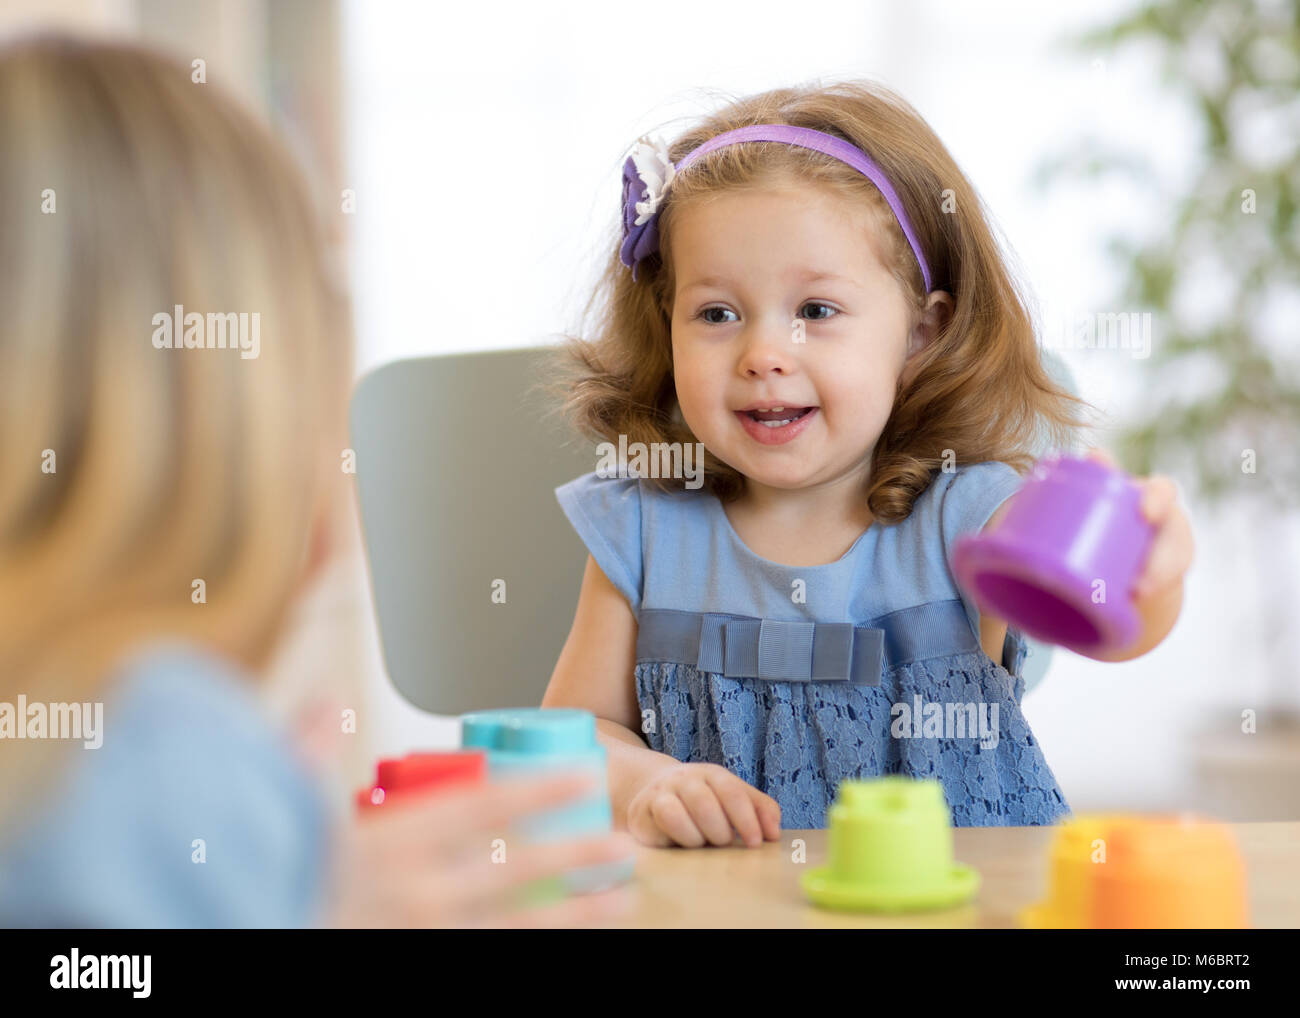 2 años de edad niña jugando con taza juguetes educativos en